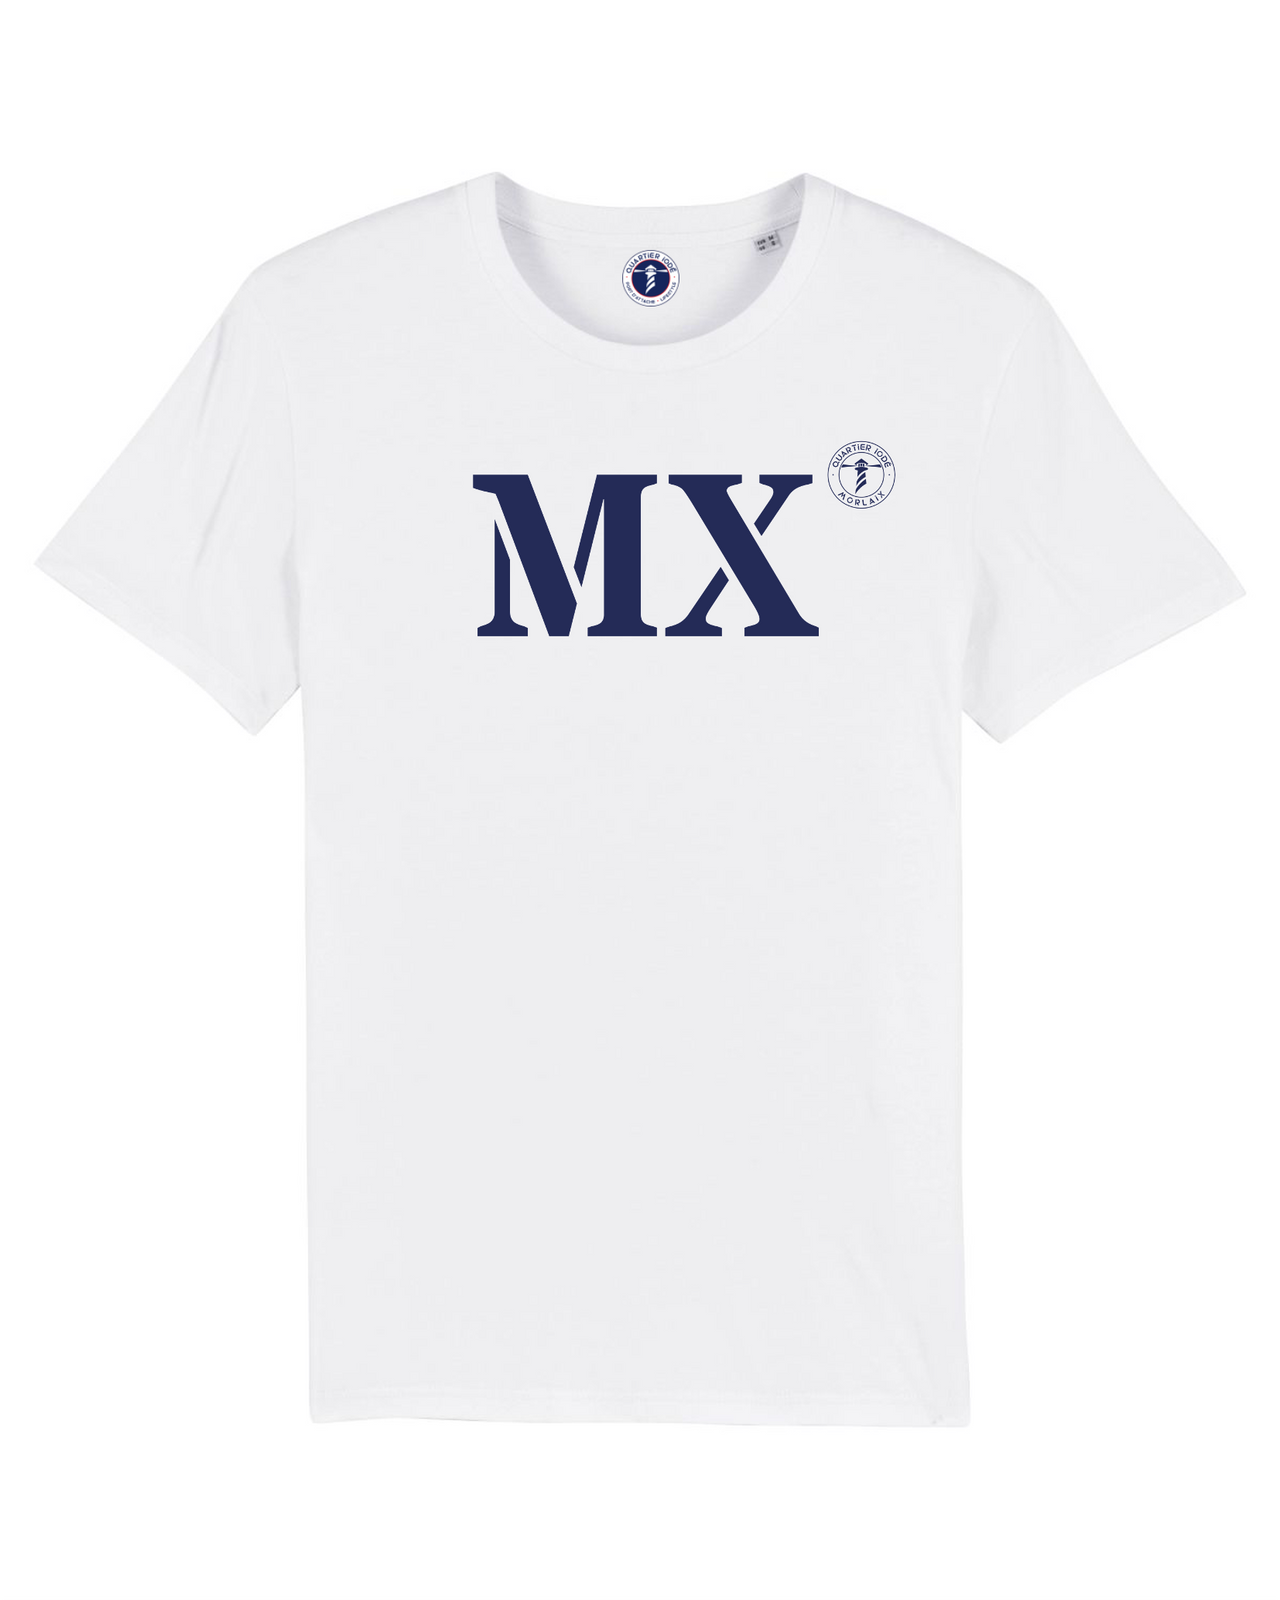 T-shirt Morlaix MX "MON QUARTIER MARITIME" - Blanc et  Bleu - Unisexe